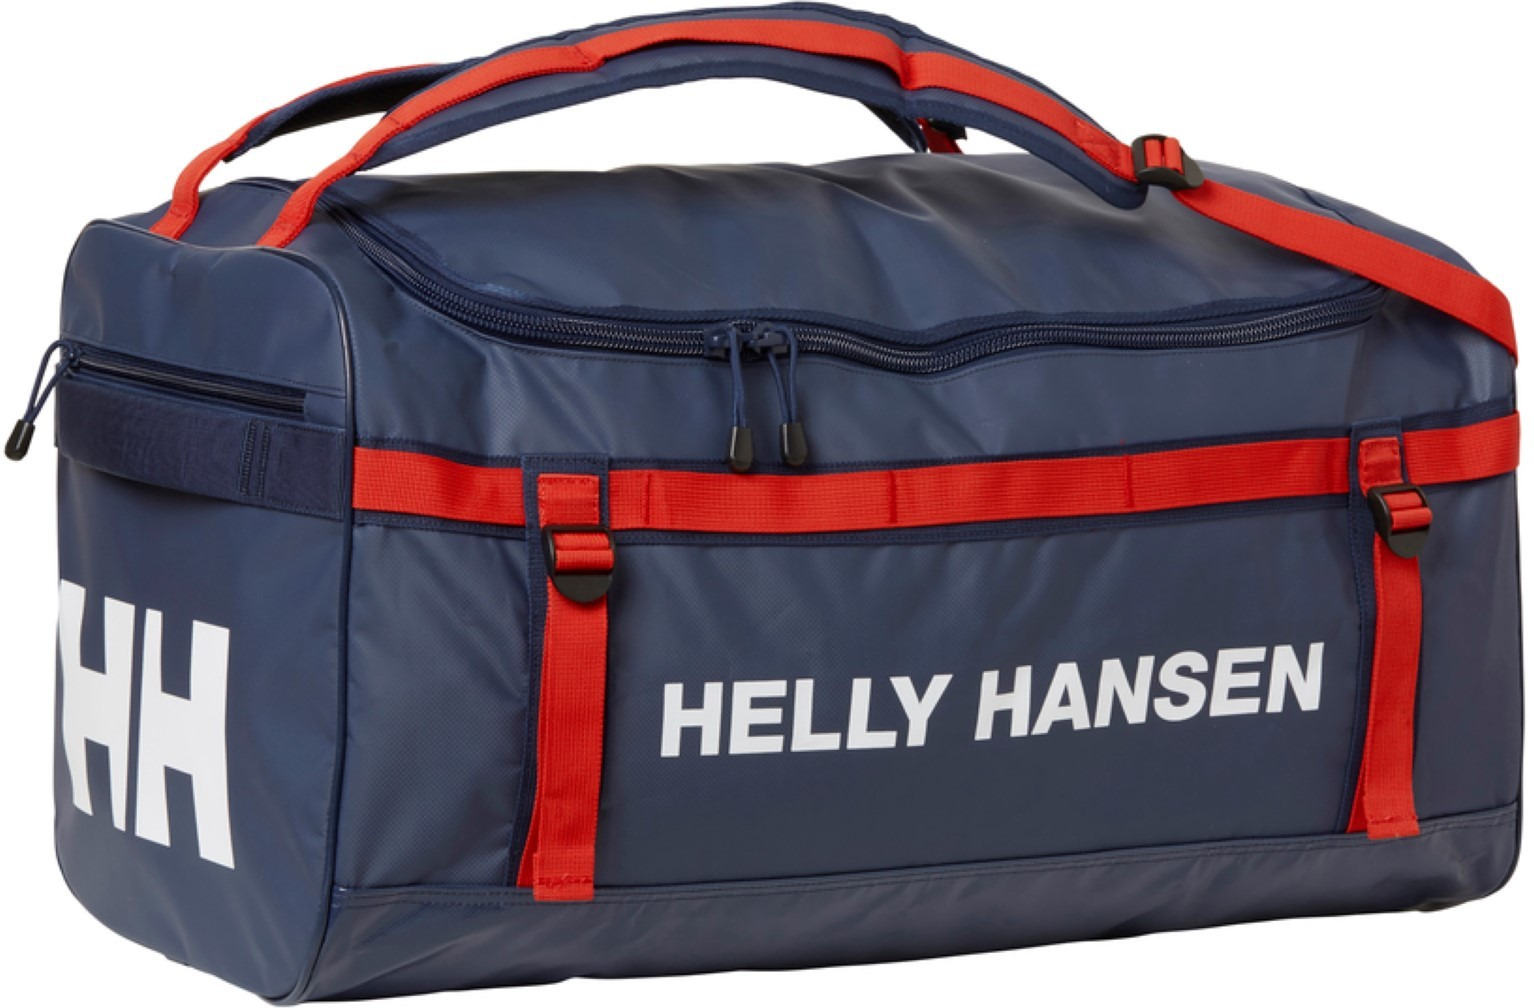 Сумка Helly Hansen Hh Classic Duffel Bag, 67169_689, темно-синий